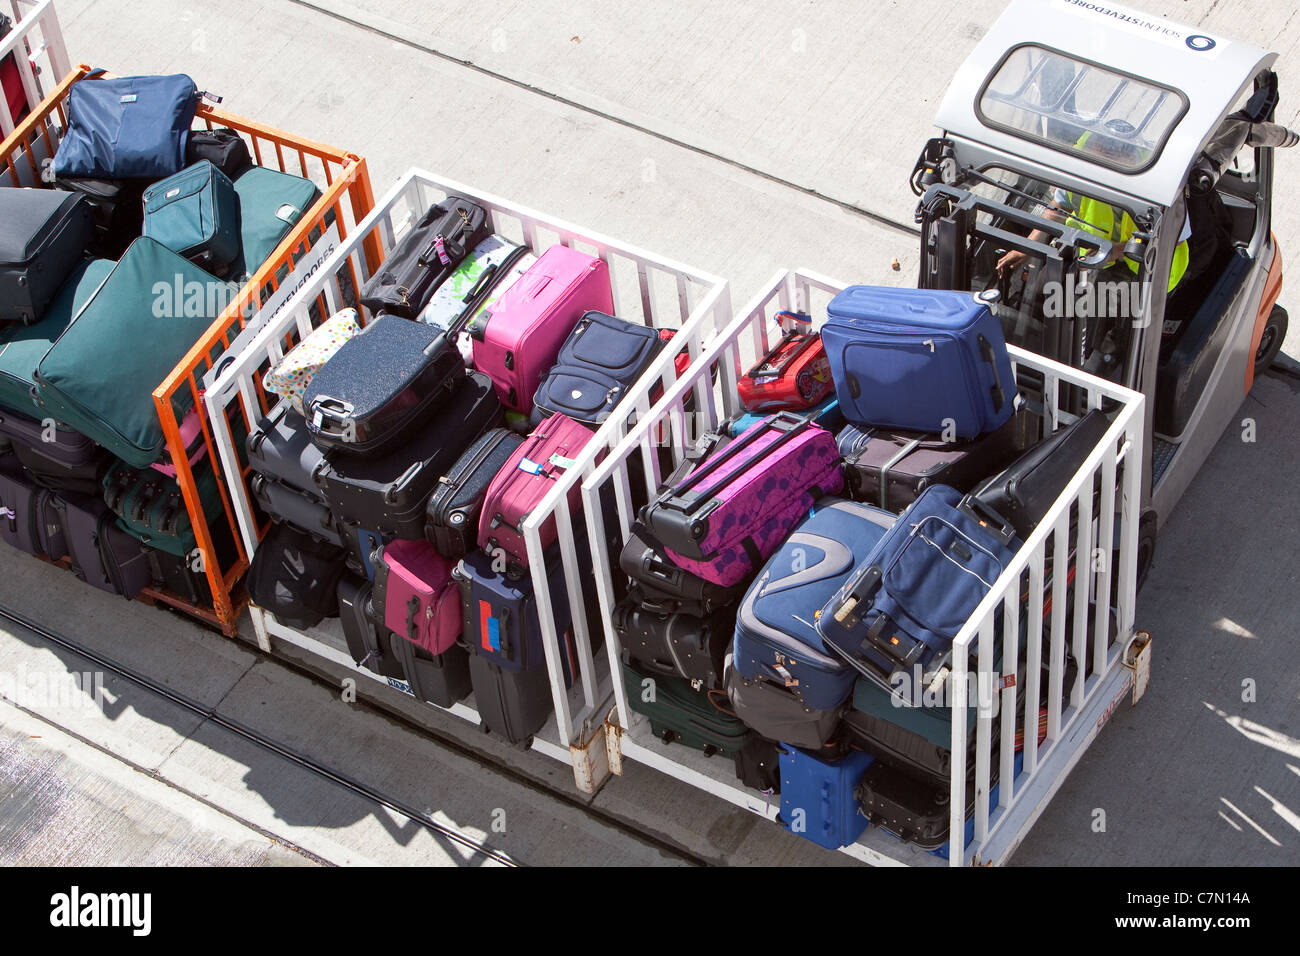 Loading passenger luggage on Cruise Ship. Port of Southampton England Uk  Stock Photo - Alamy